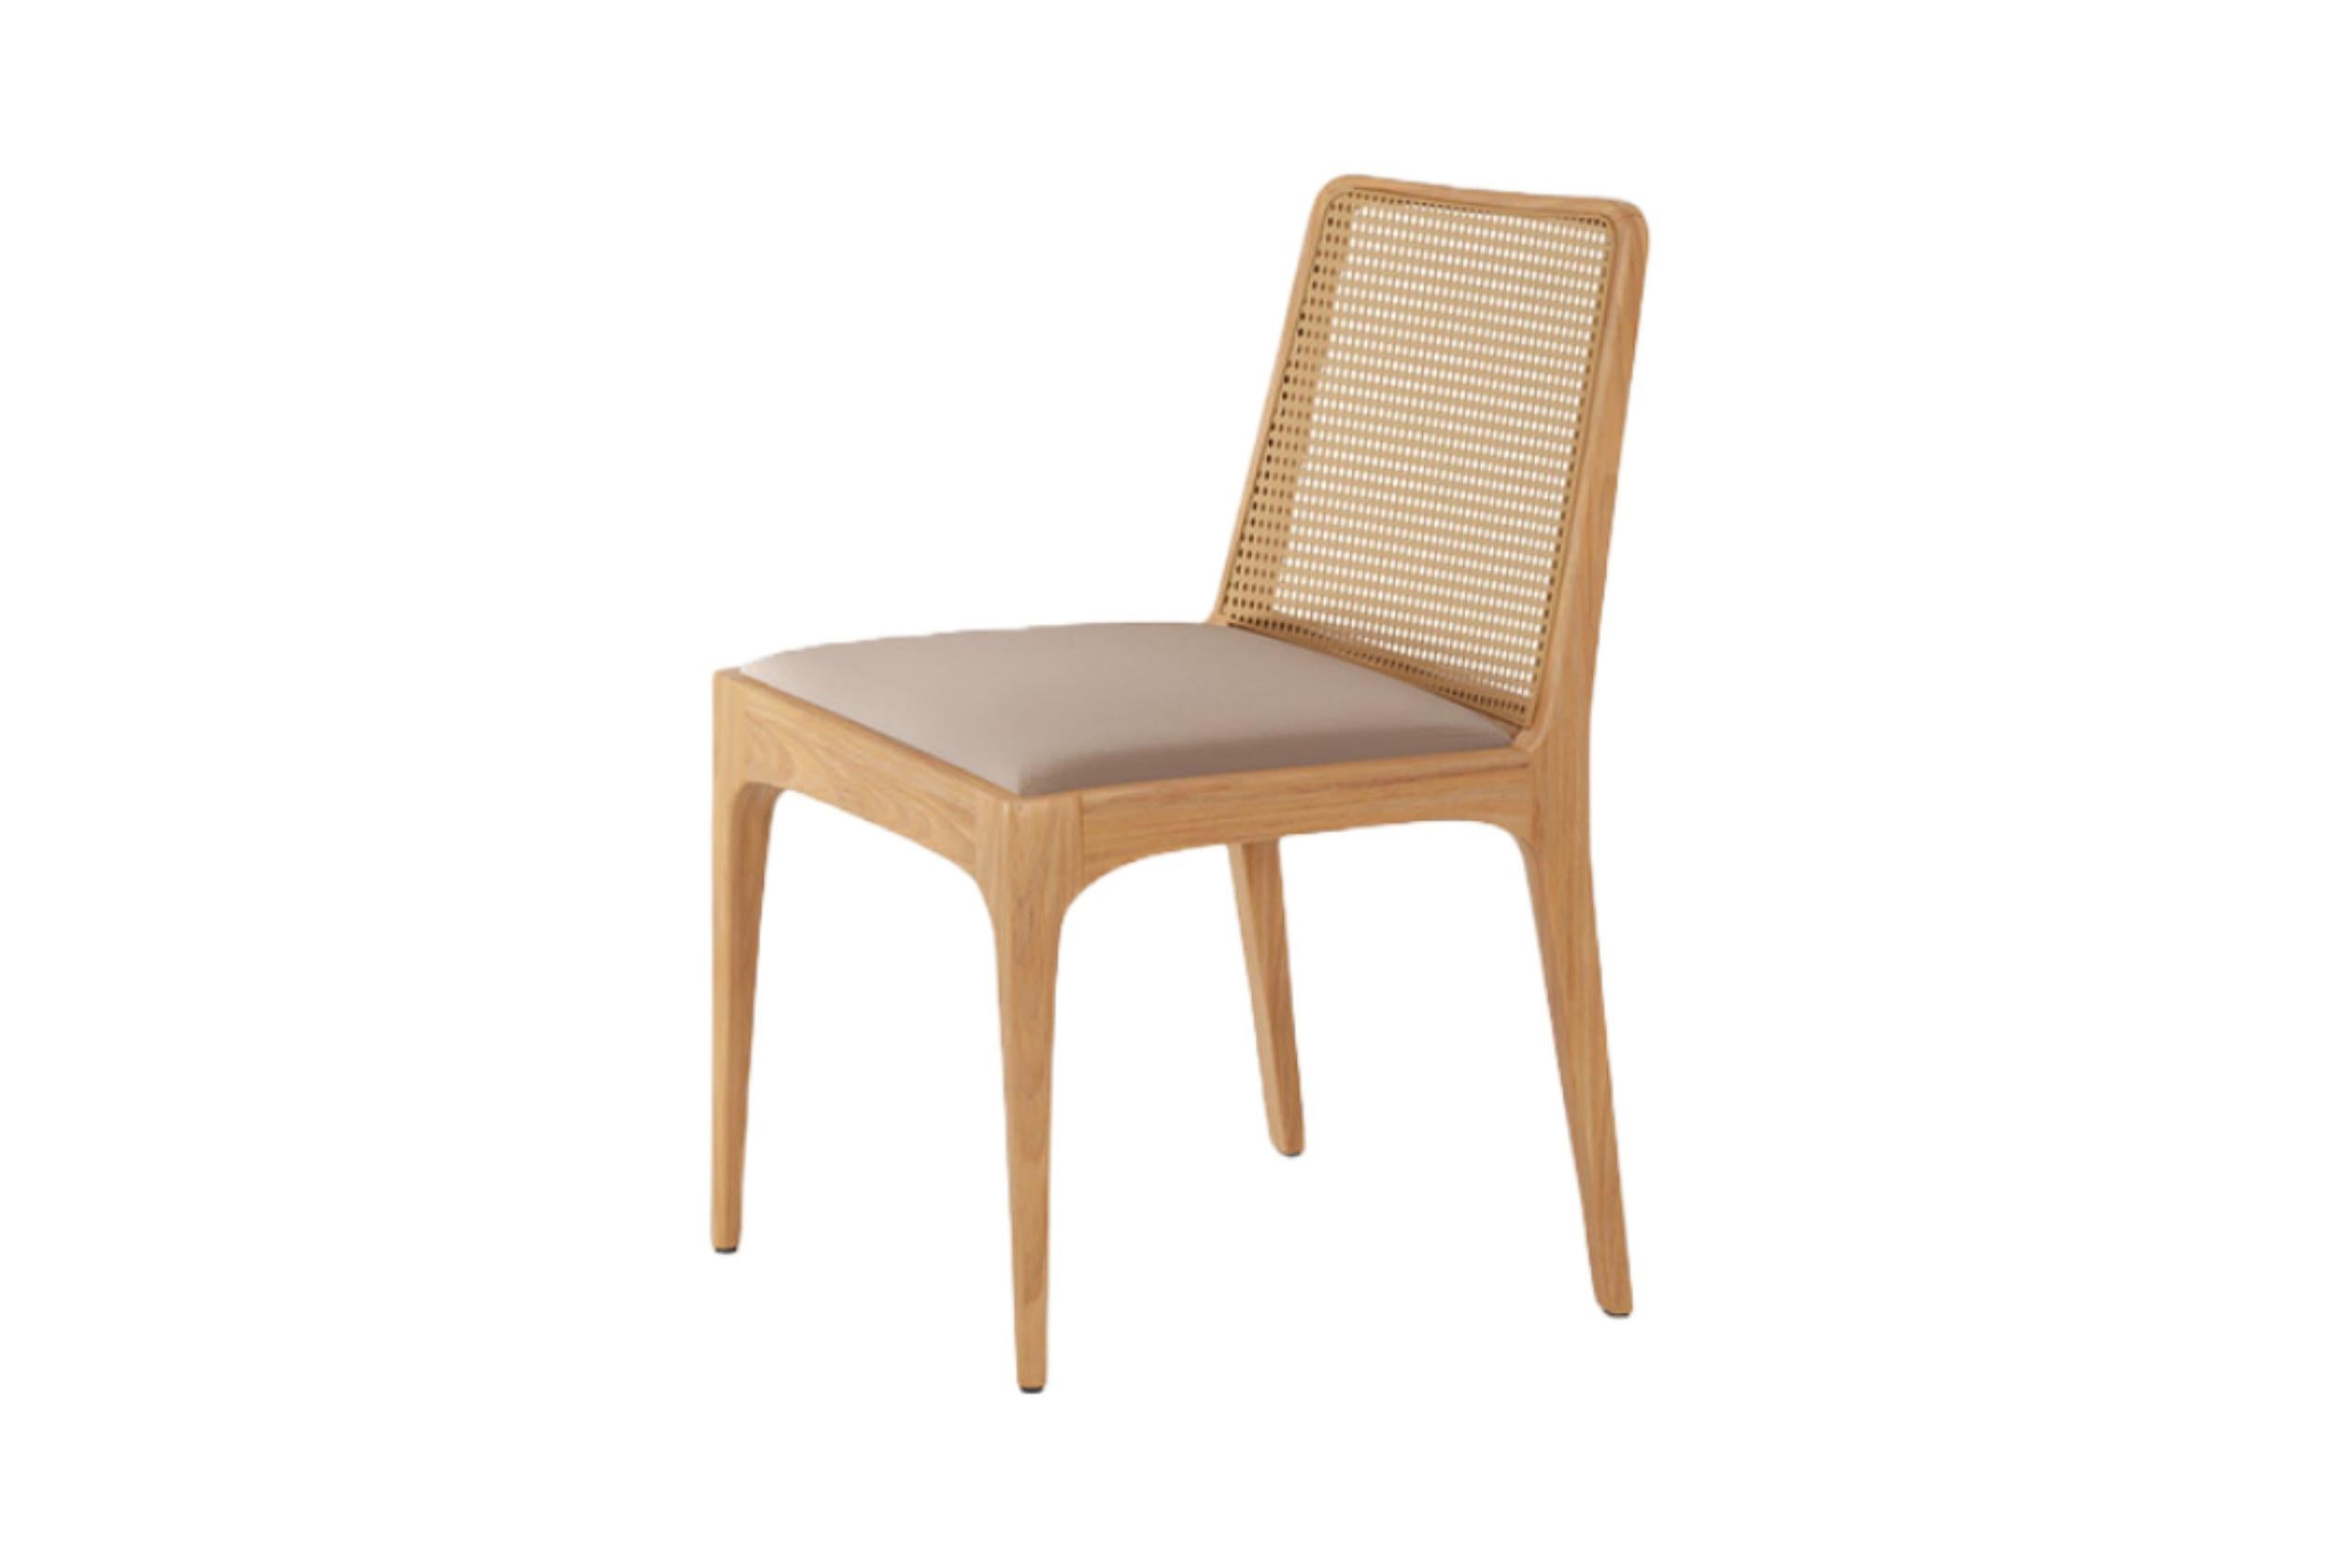 Lorsqu'elle a créé Julia Chair, Alessandra Delgado voulait une pièce aux traits délicats, explorant les courbes du bois avec un design inspiré du travail du maître designer Joaquim Tenreiro. La chaise Julia est fabriquée en bois massif et, bien que